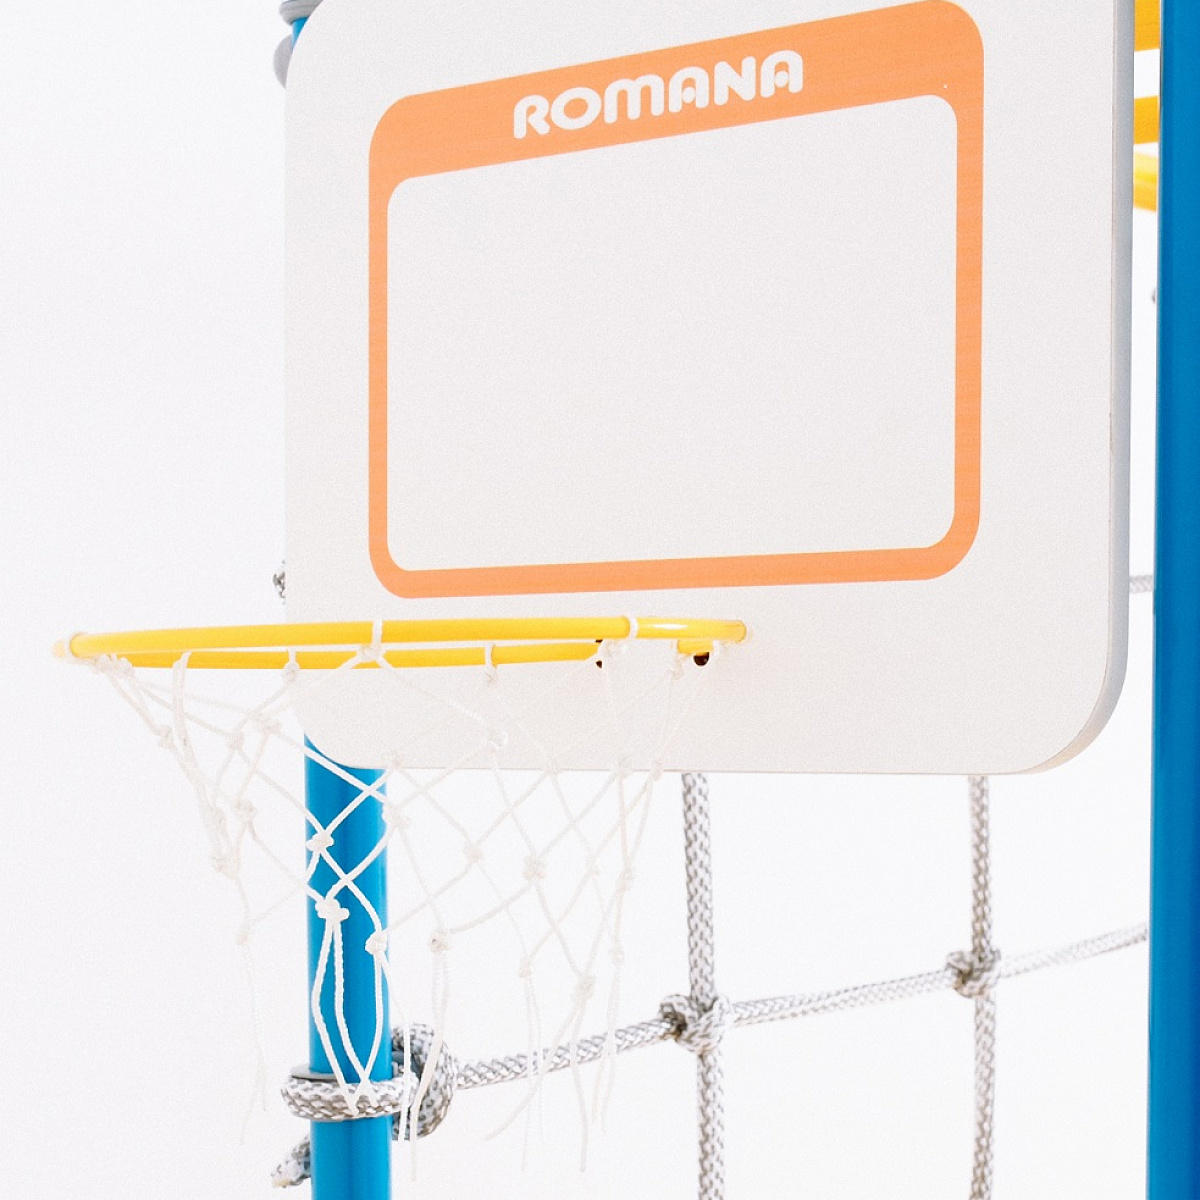 ROMANA Dop12 Basketball board